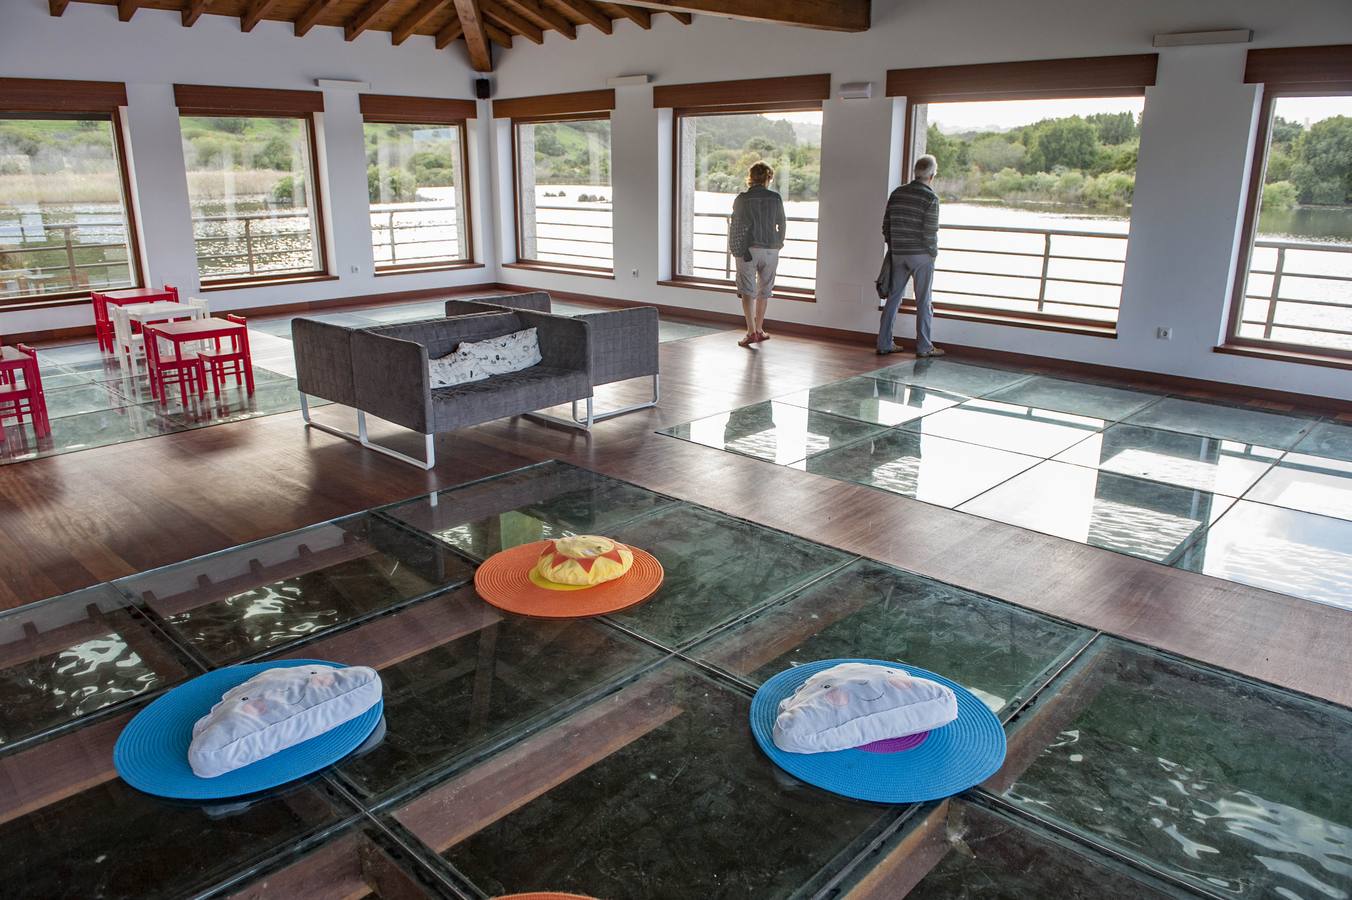 La Casa de las Mareas de Soano, con 8.500 visitas este año, se erige como baluarte turístico